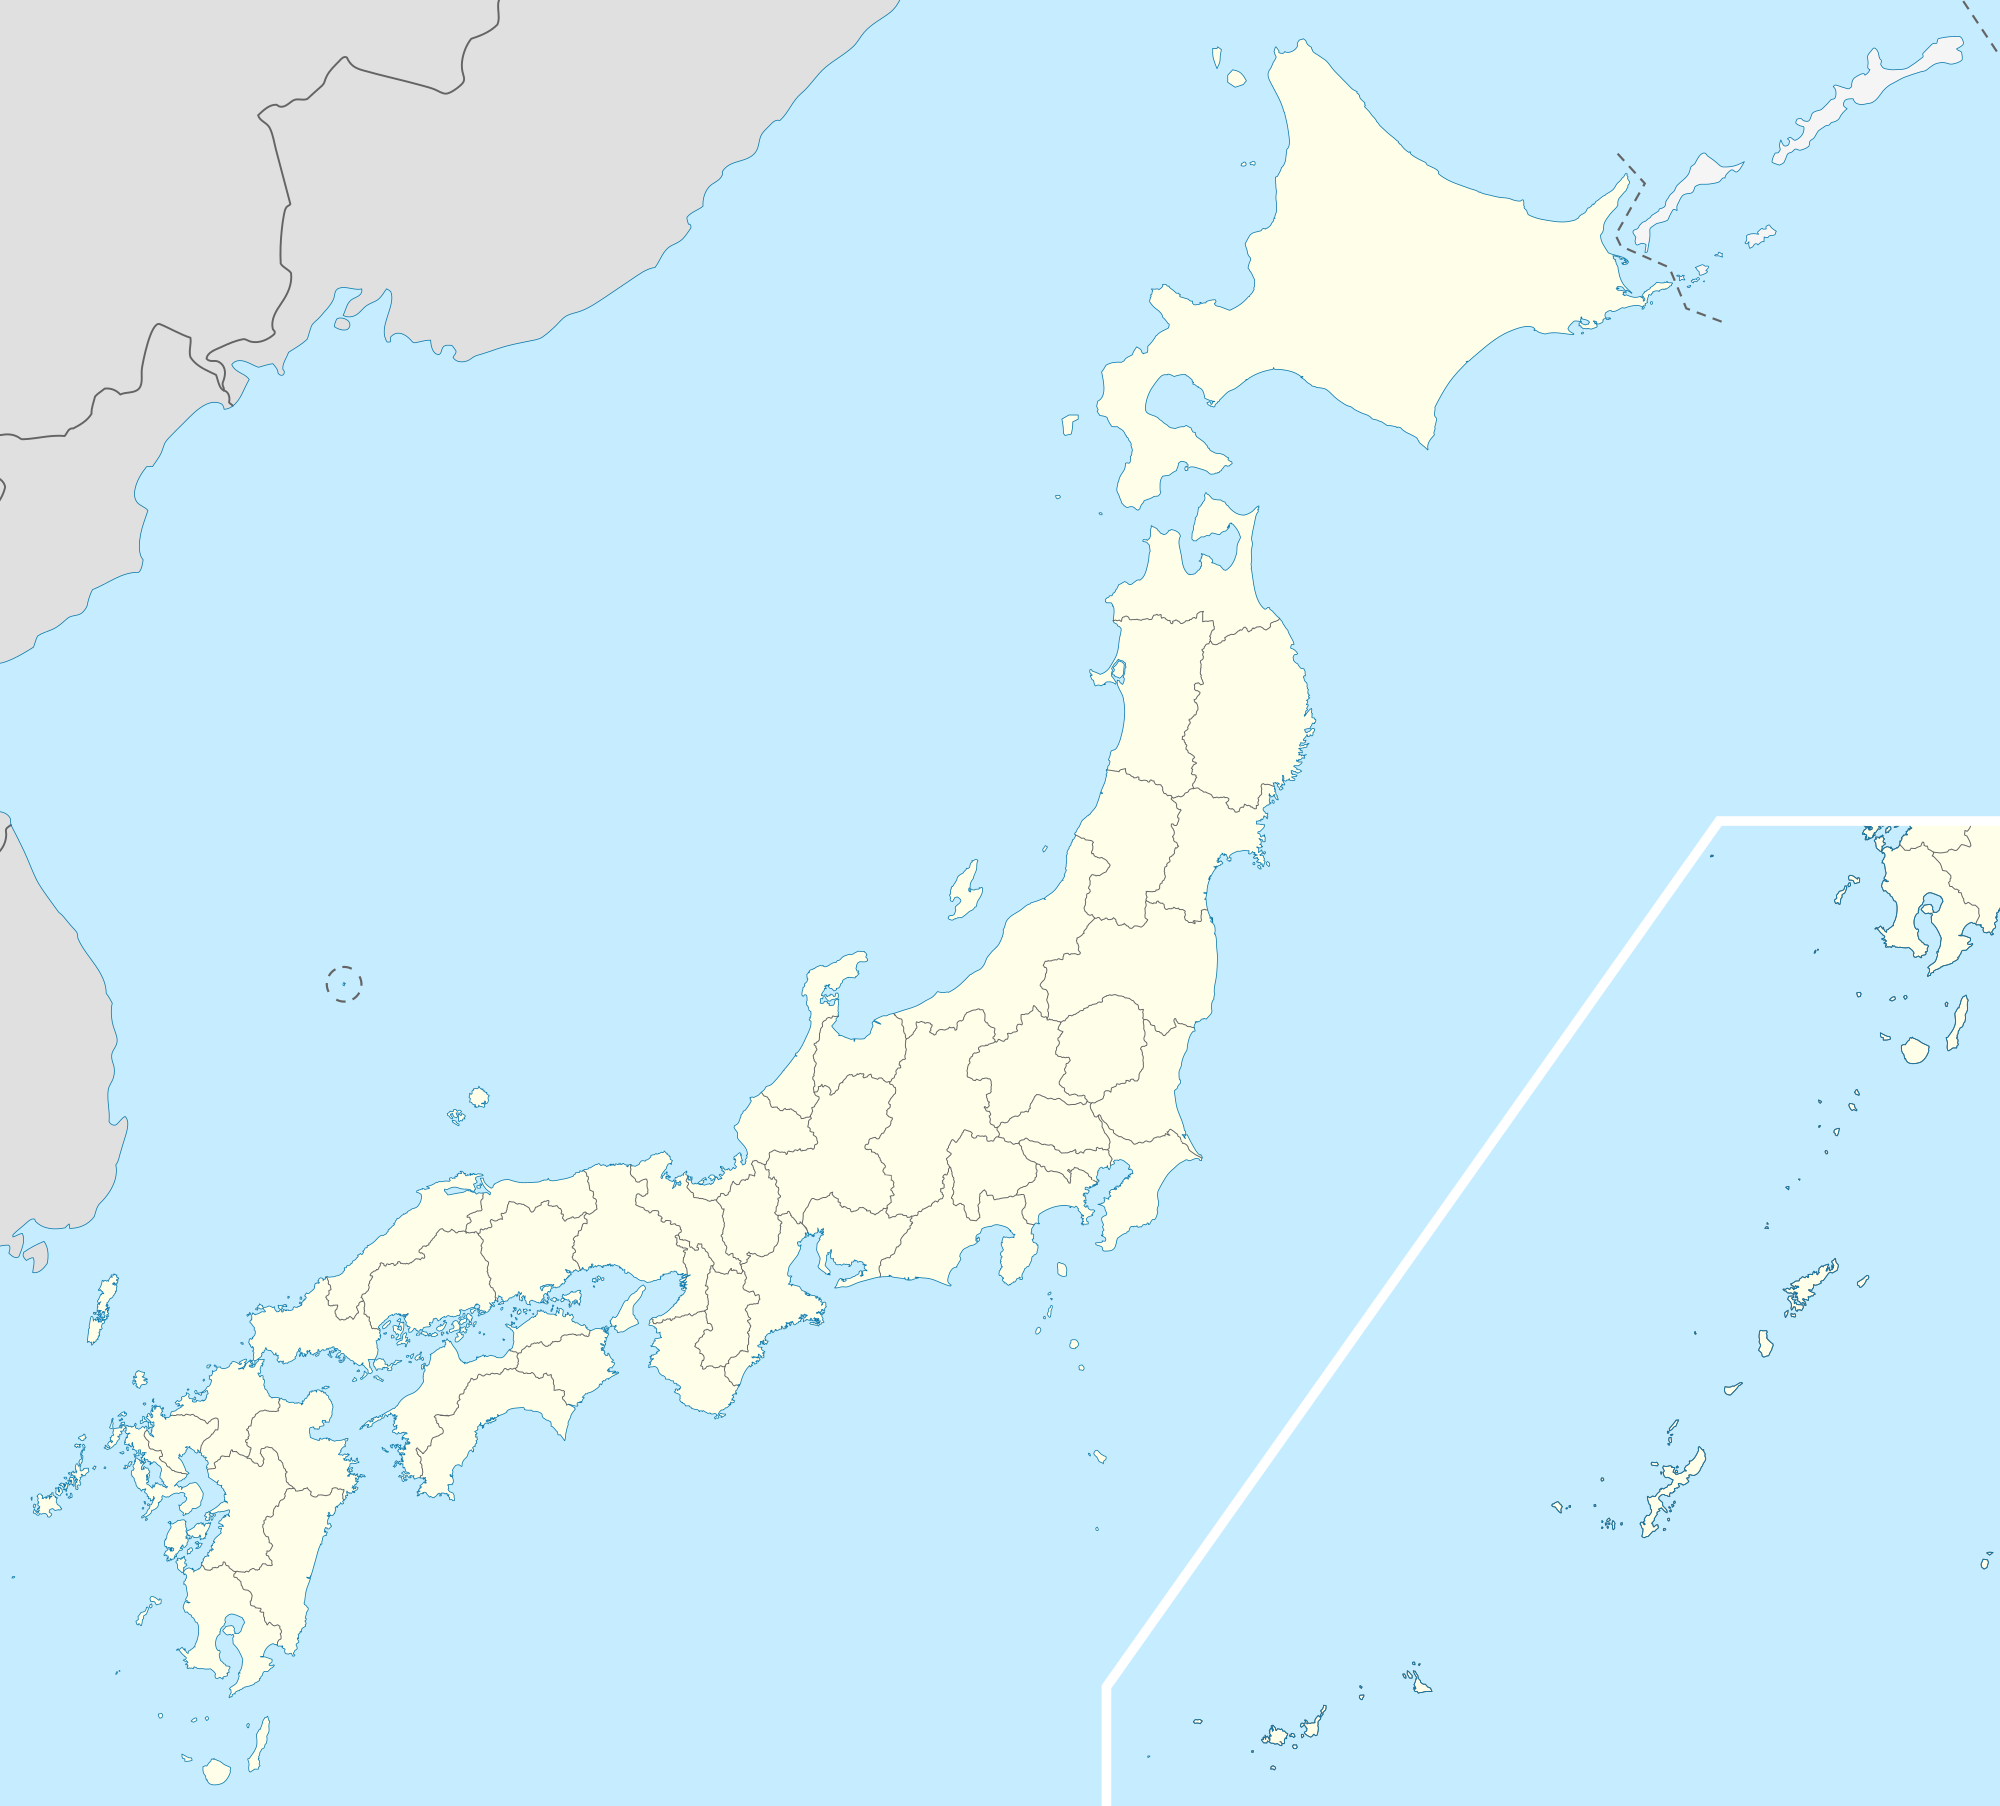 横浜 is located in Japan